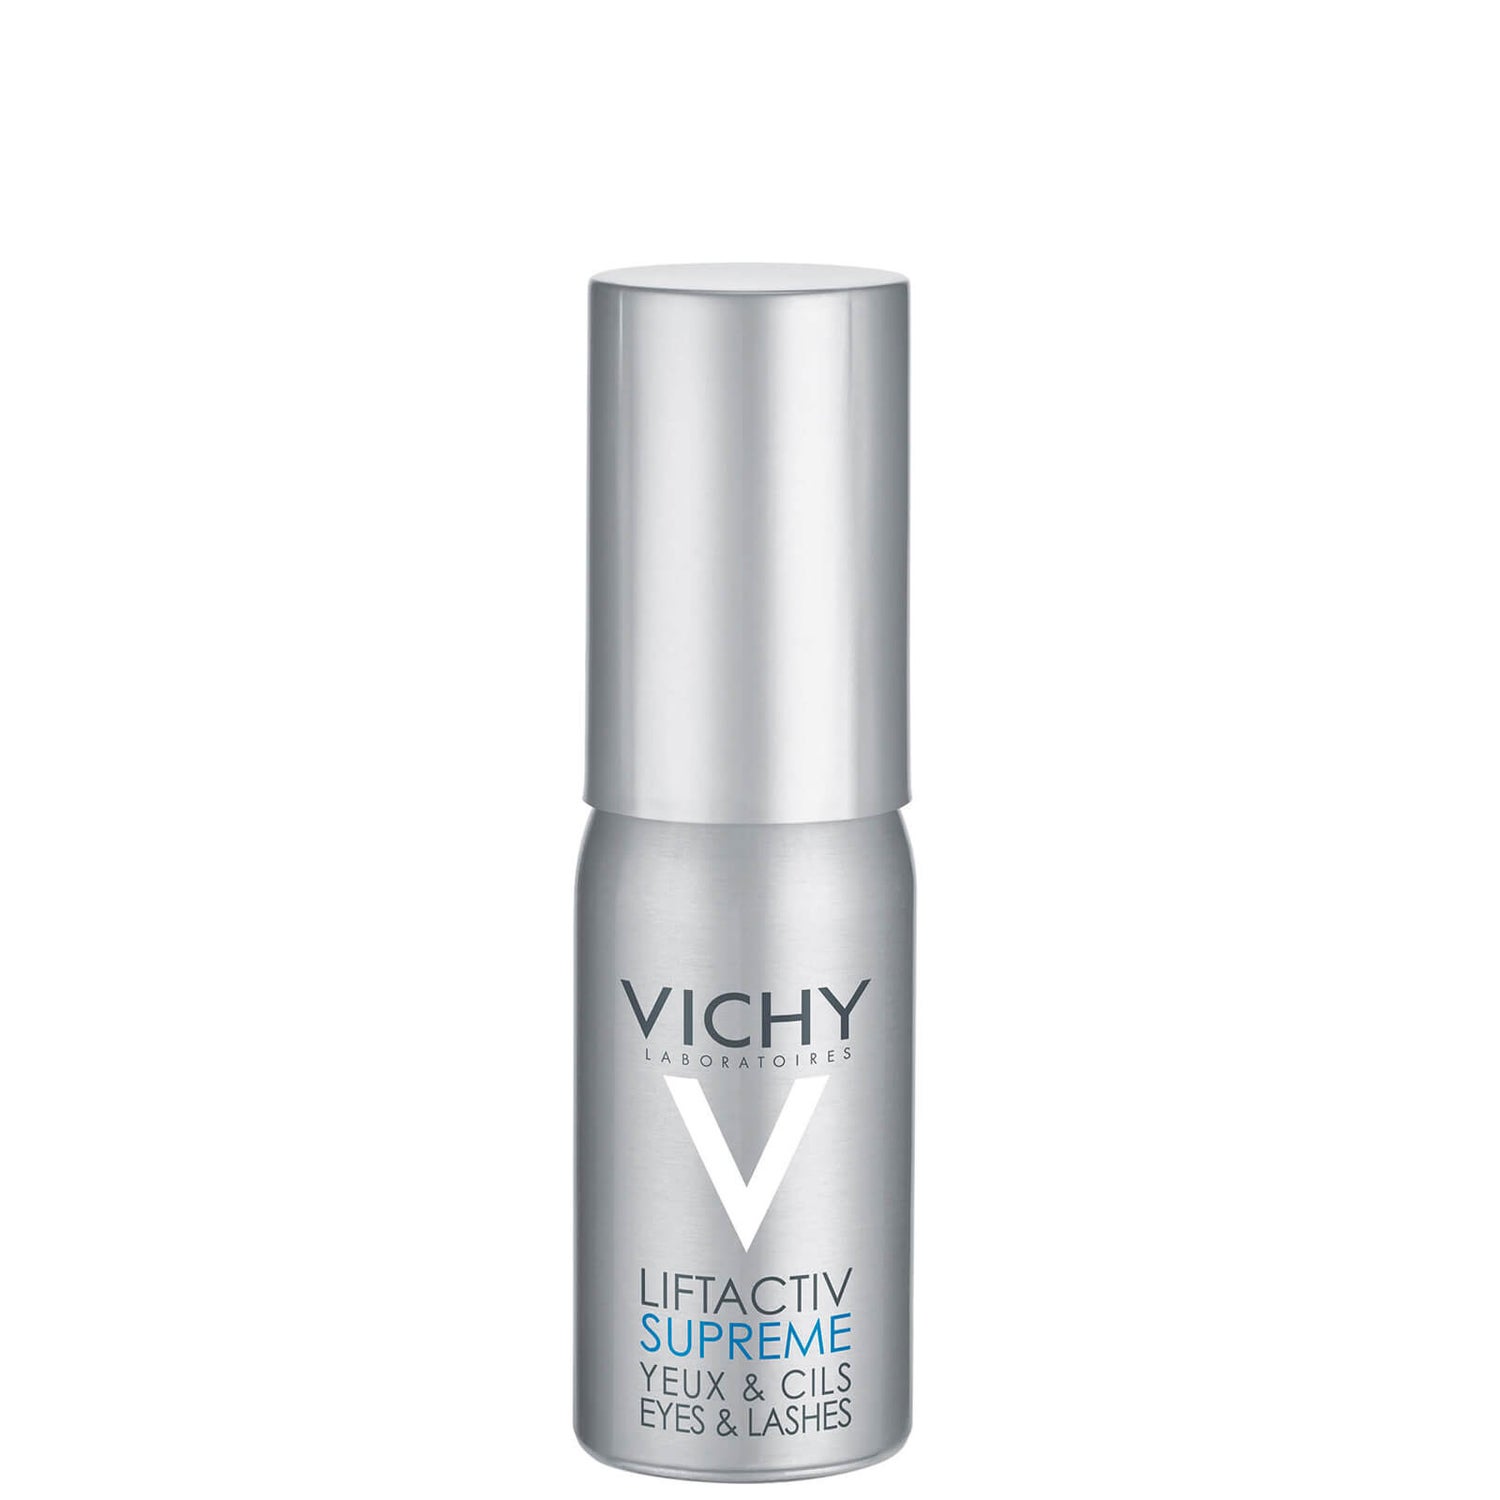 Vichy LiftActiv Serum 10 Augen & Wimpern 15ml